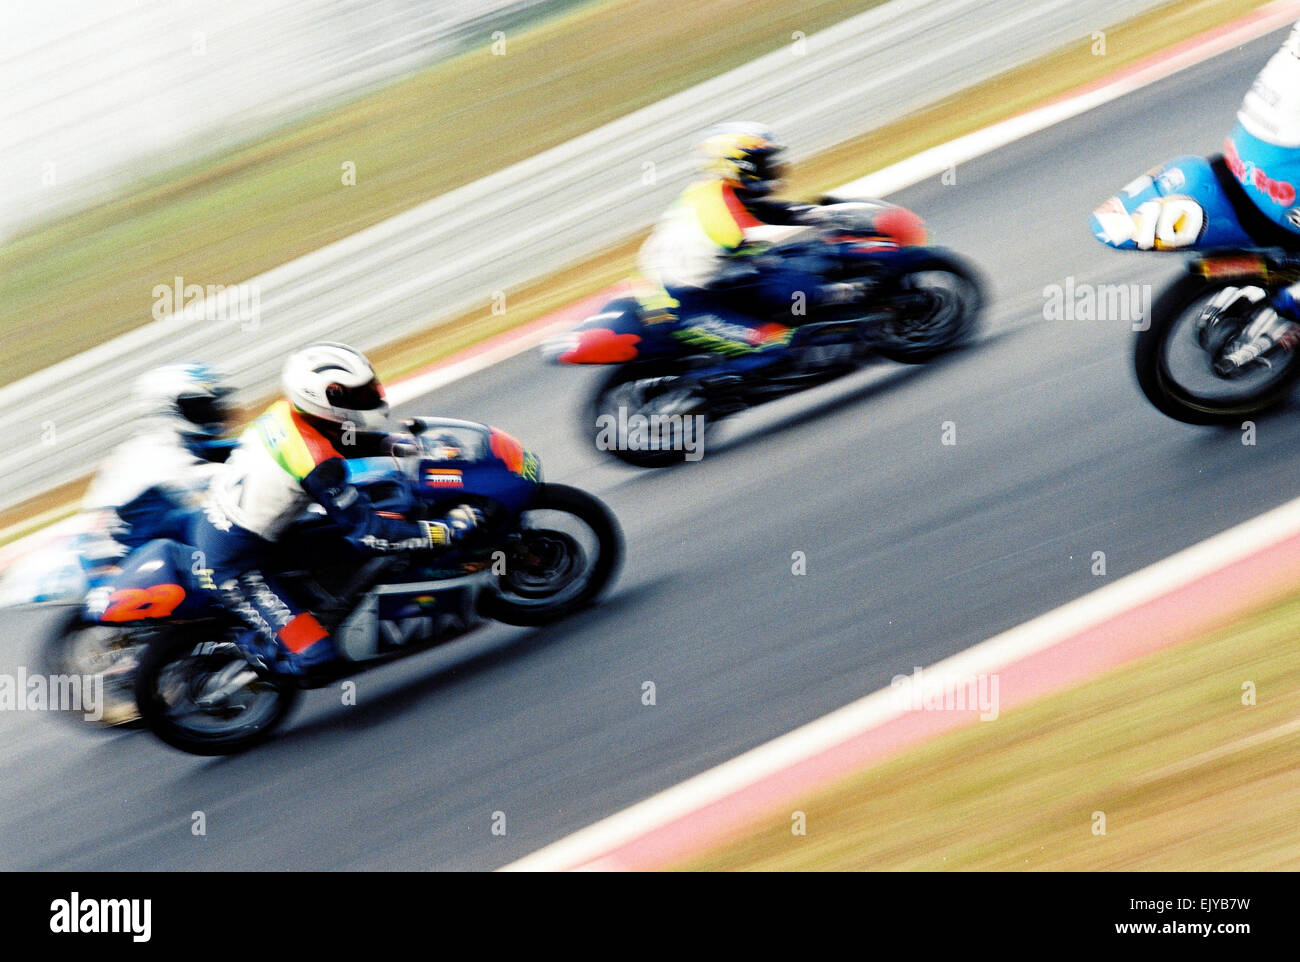 Moto1, 250cc Course sur route. Il s'agit d'un slo-mo panoramique de la course moto Banque D'Images